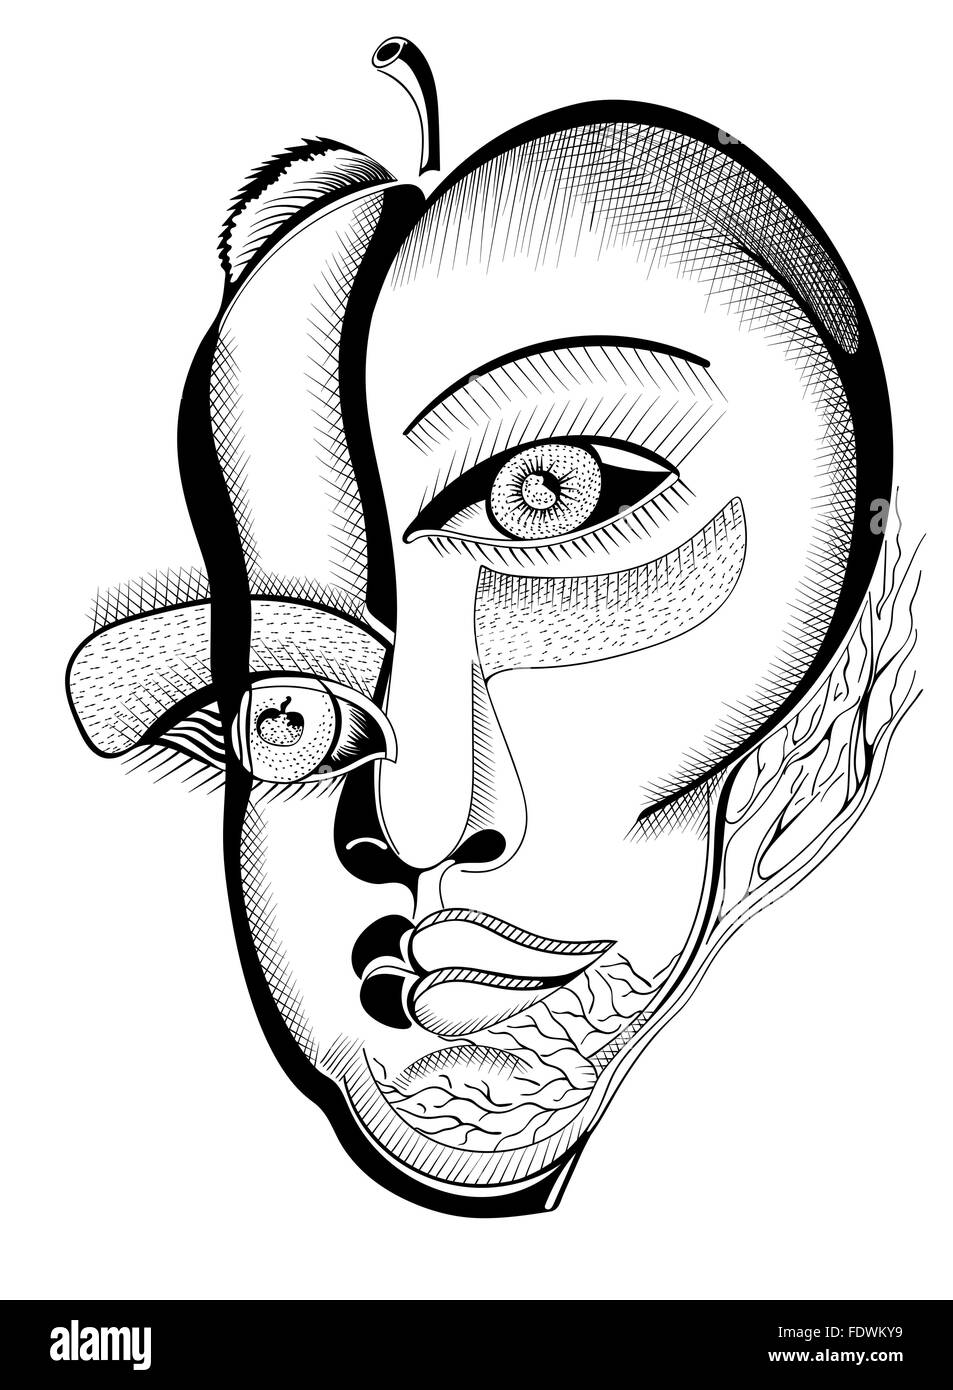 Dessin à la main, visages surréaliste abstract template avec contours noirs, peuvent utiliser pour les affiches, autocollants cartes, illustrations Illustration de Vecteur